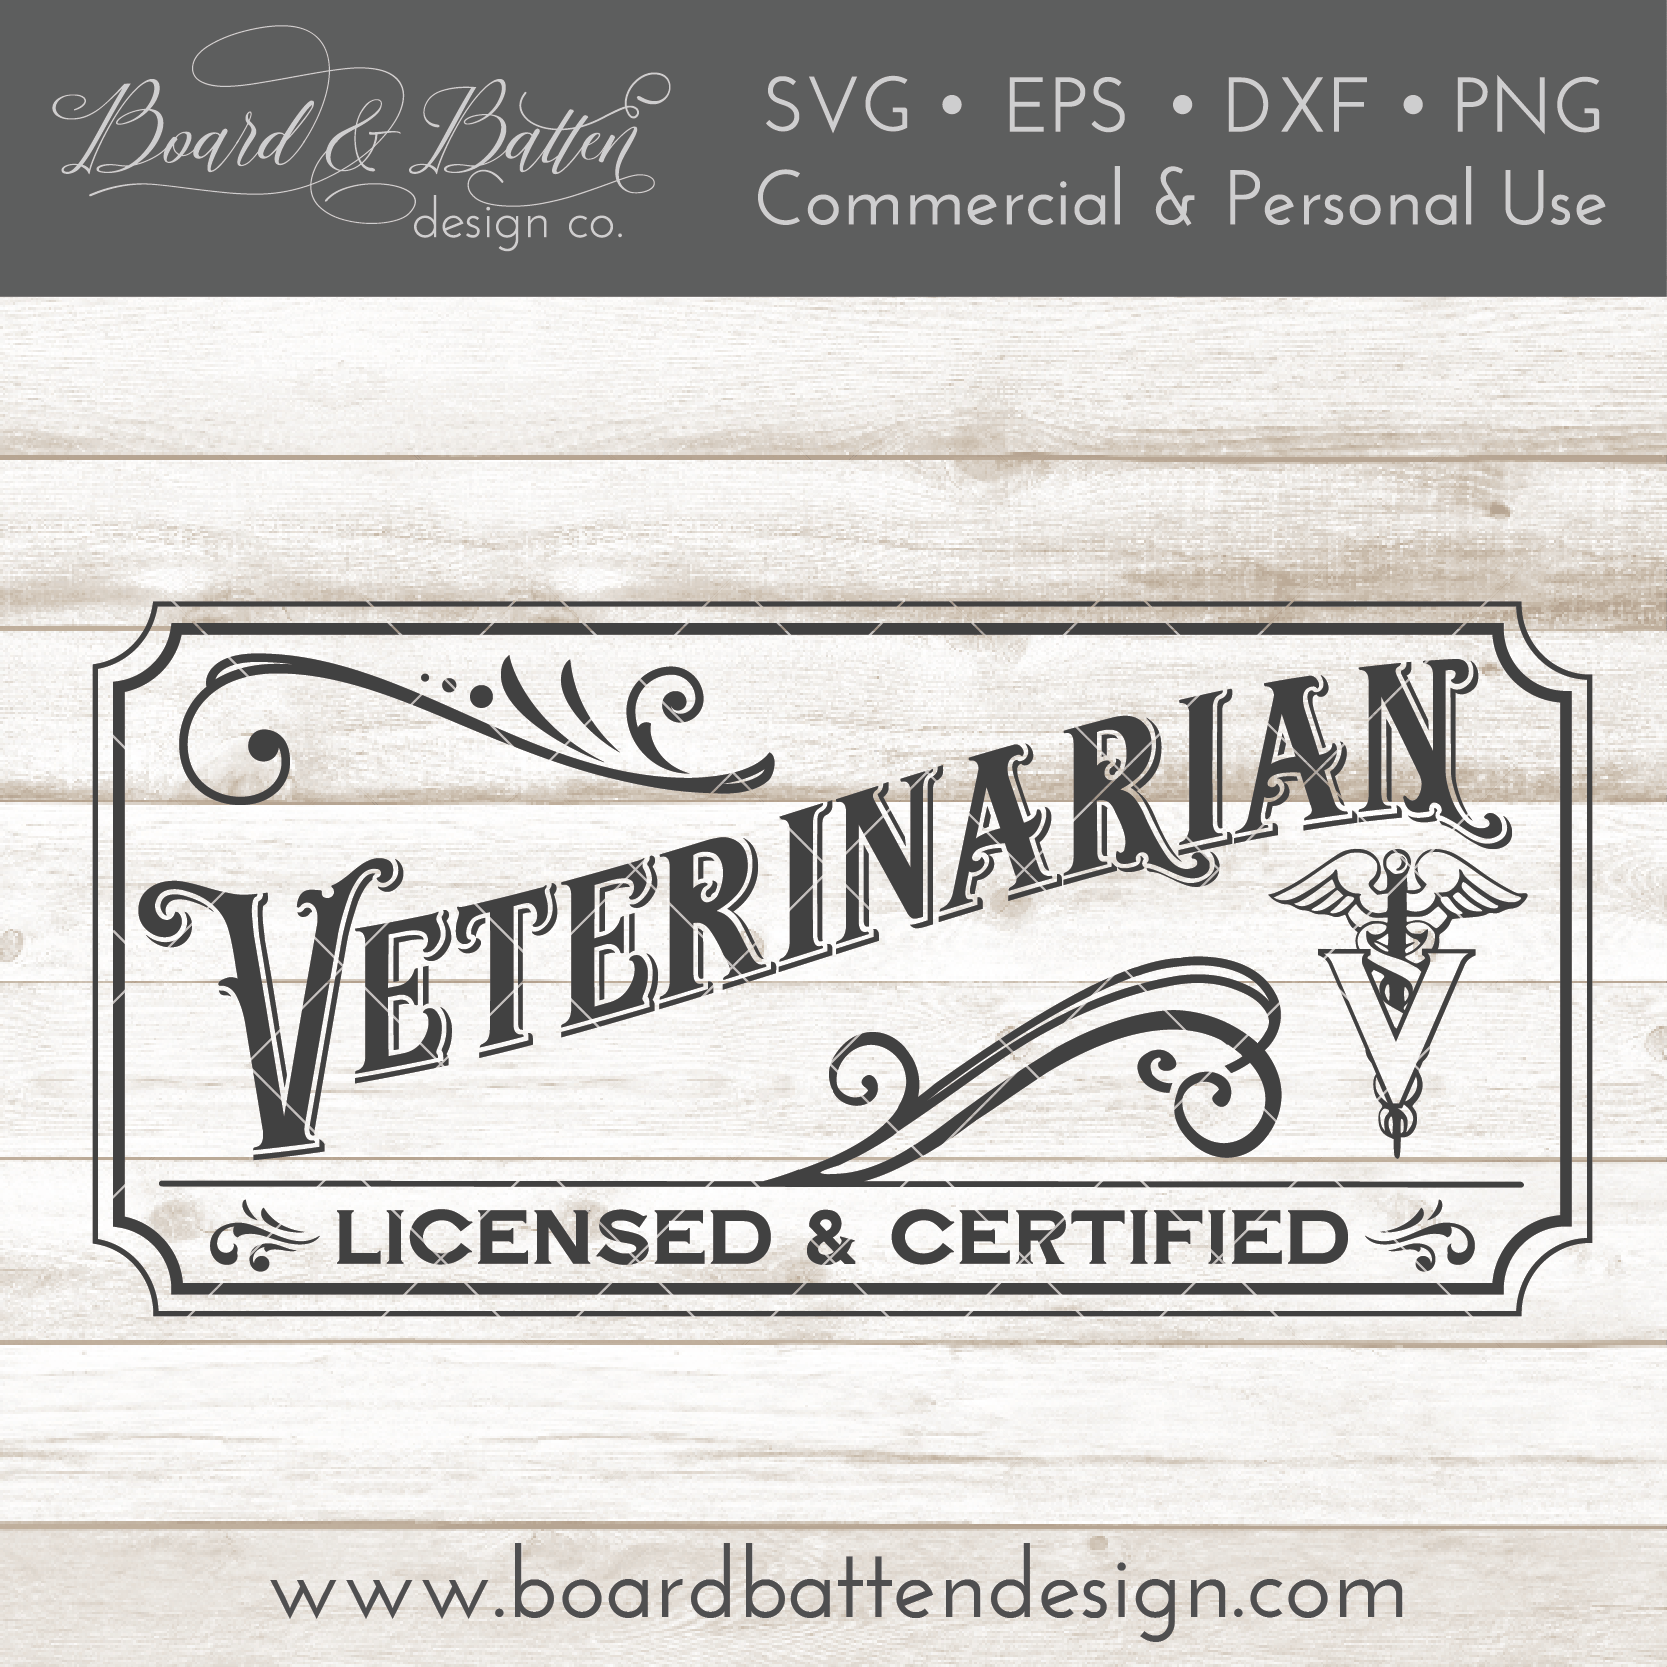 Download Vintage Veterinarian Sign SVG File - Board & Batten Design Co.